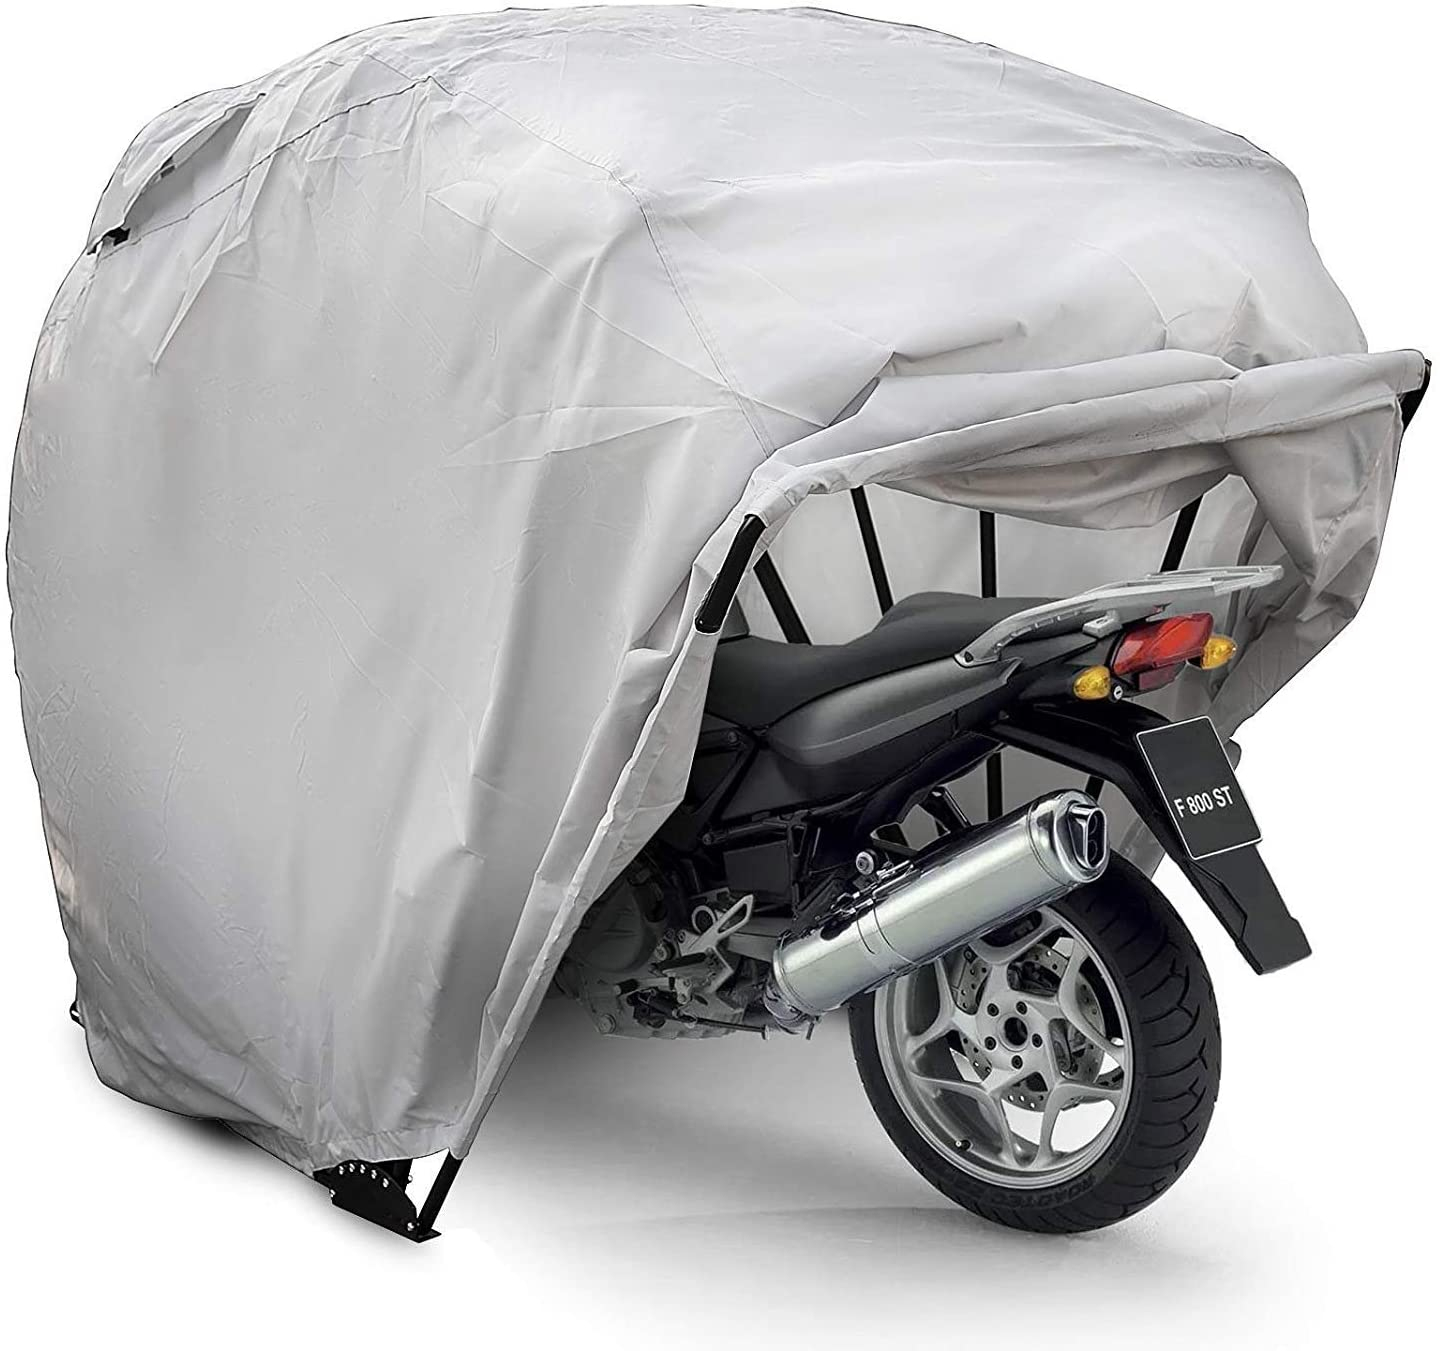 Abri Moto 2021 | Comparatif Rétractable, Bois, Métal, Extérieur concernant Construire Un Abri Moto Pas Cher